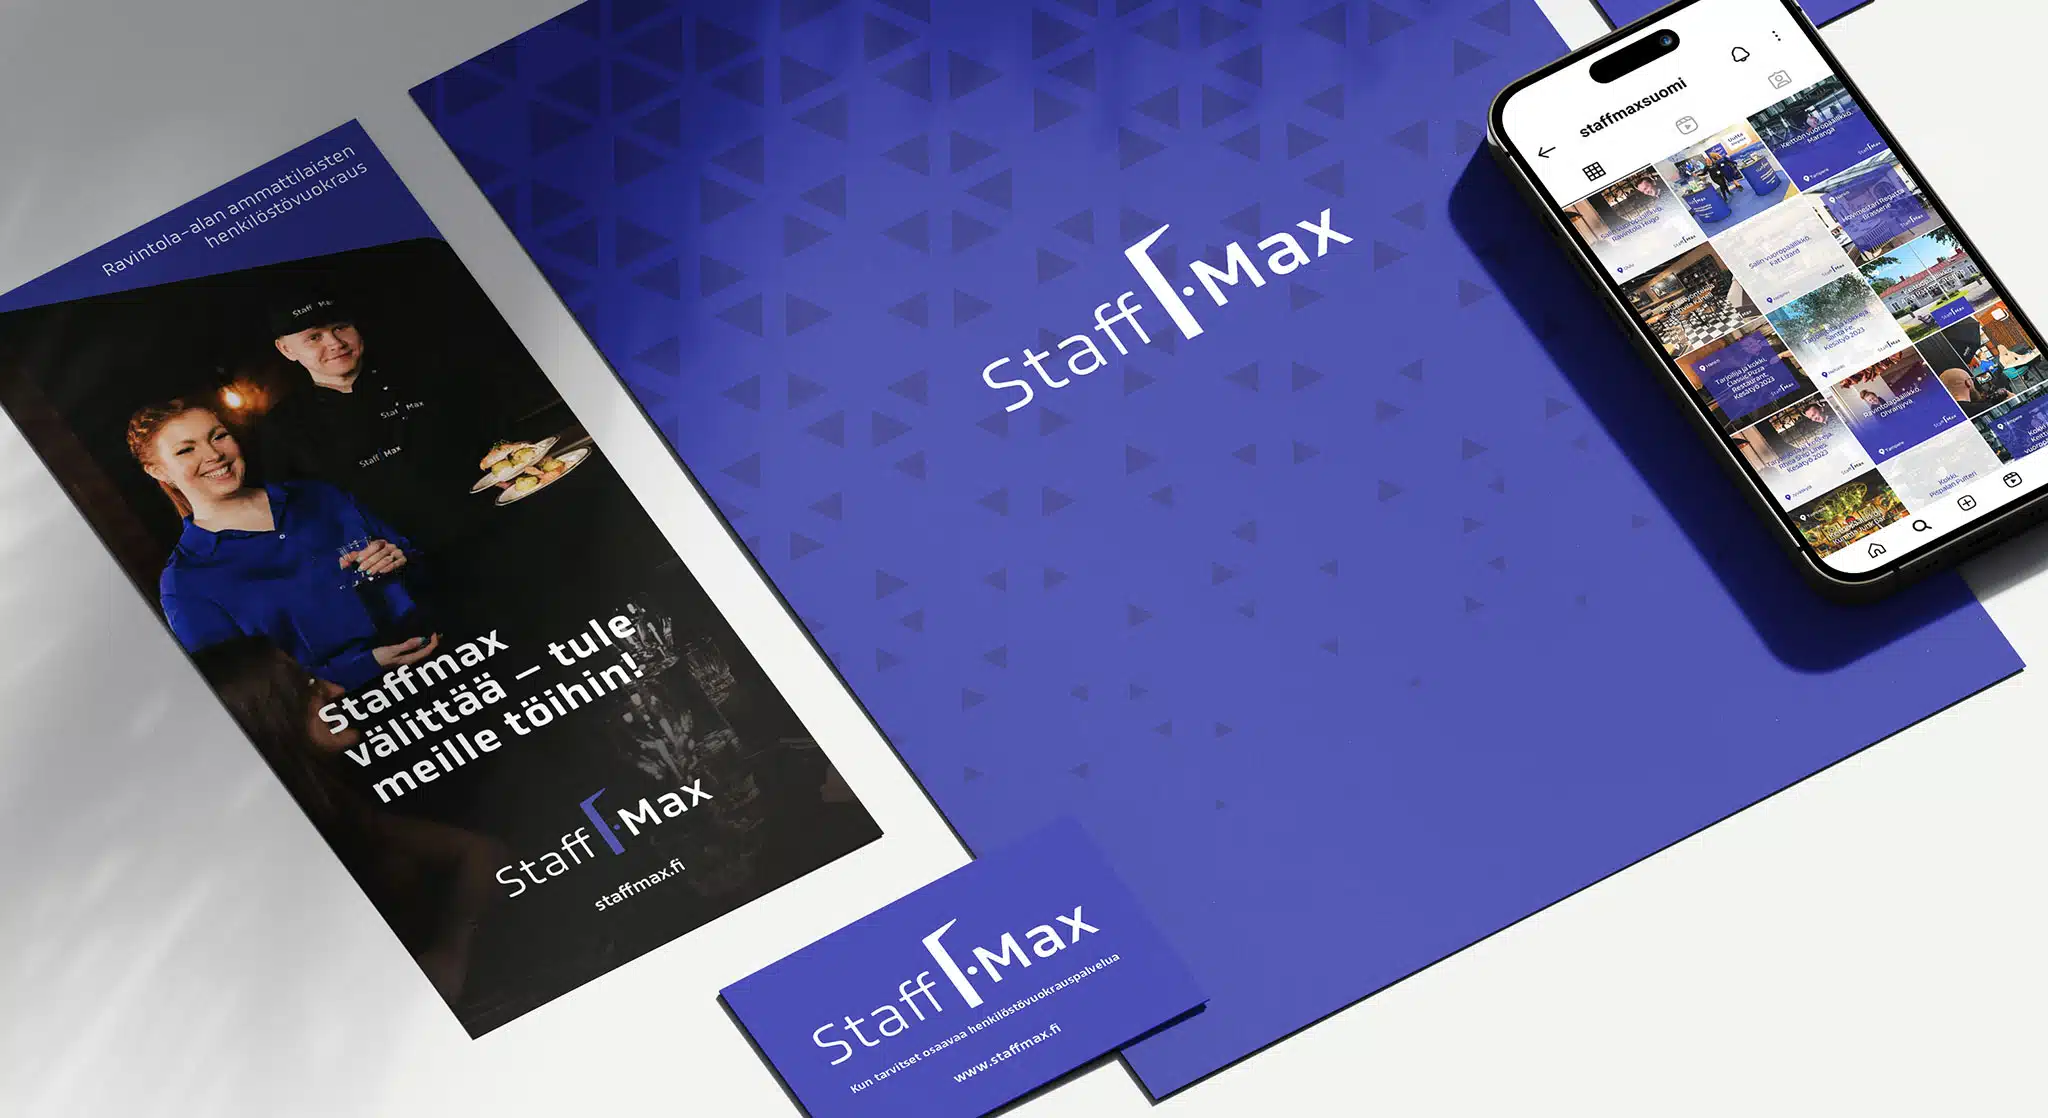 Staffmax-yrityksen markkinointimateriaaleja.